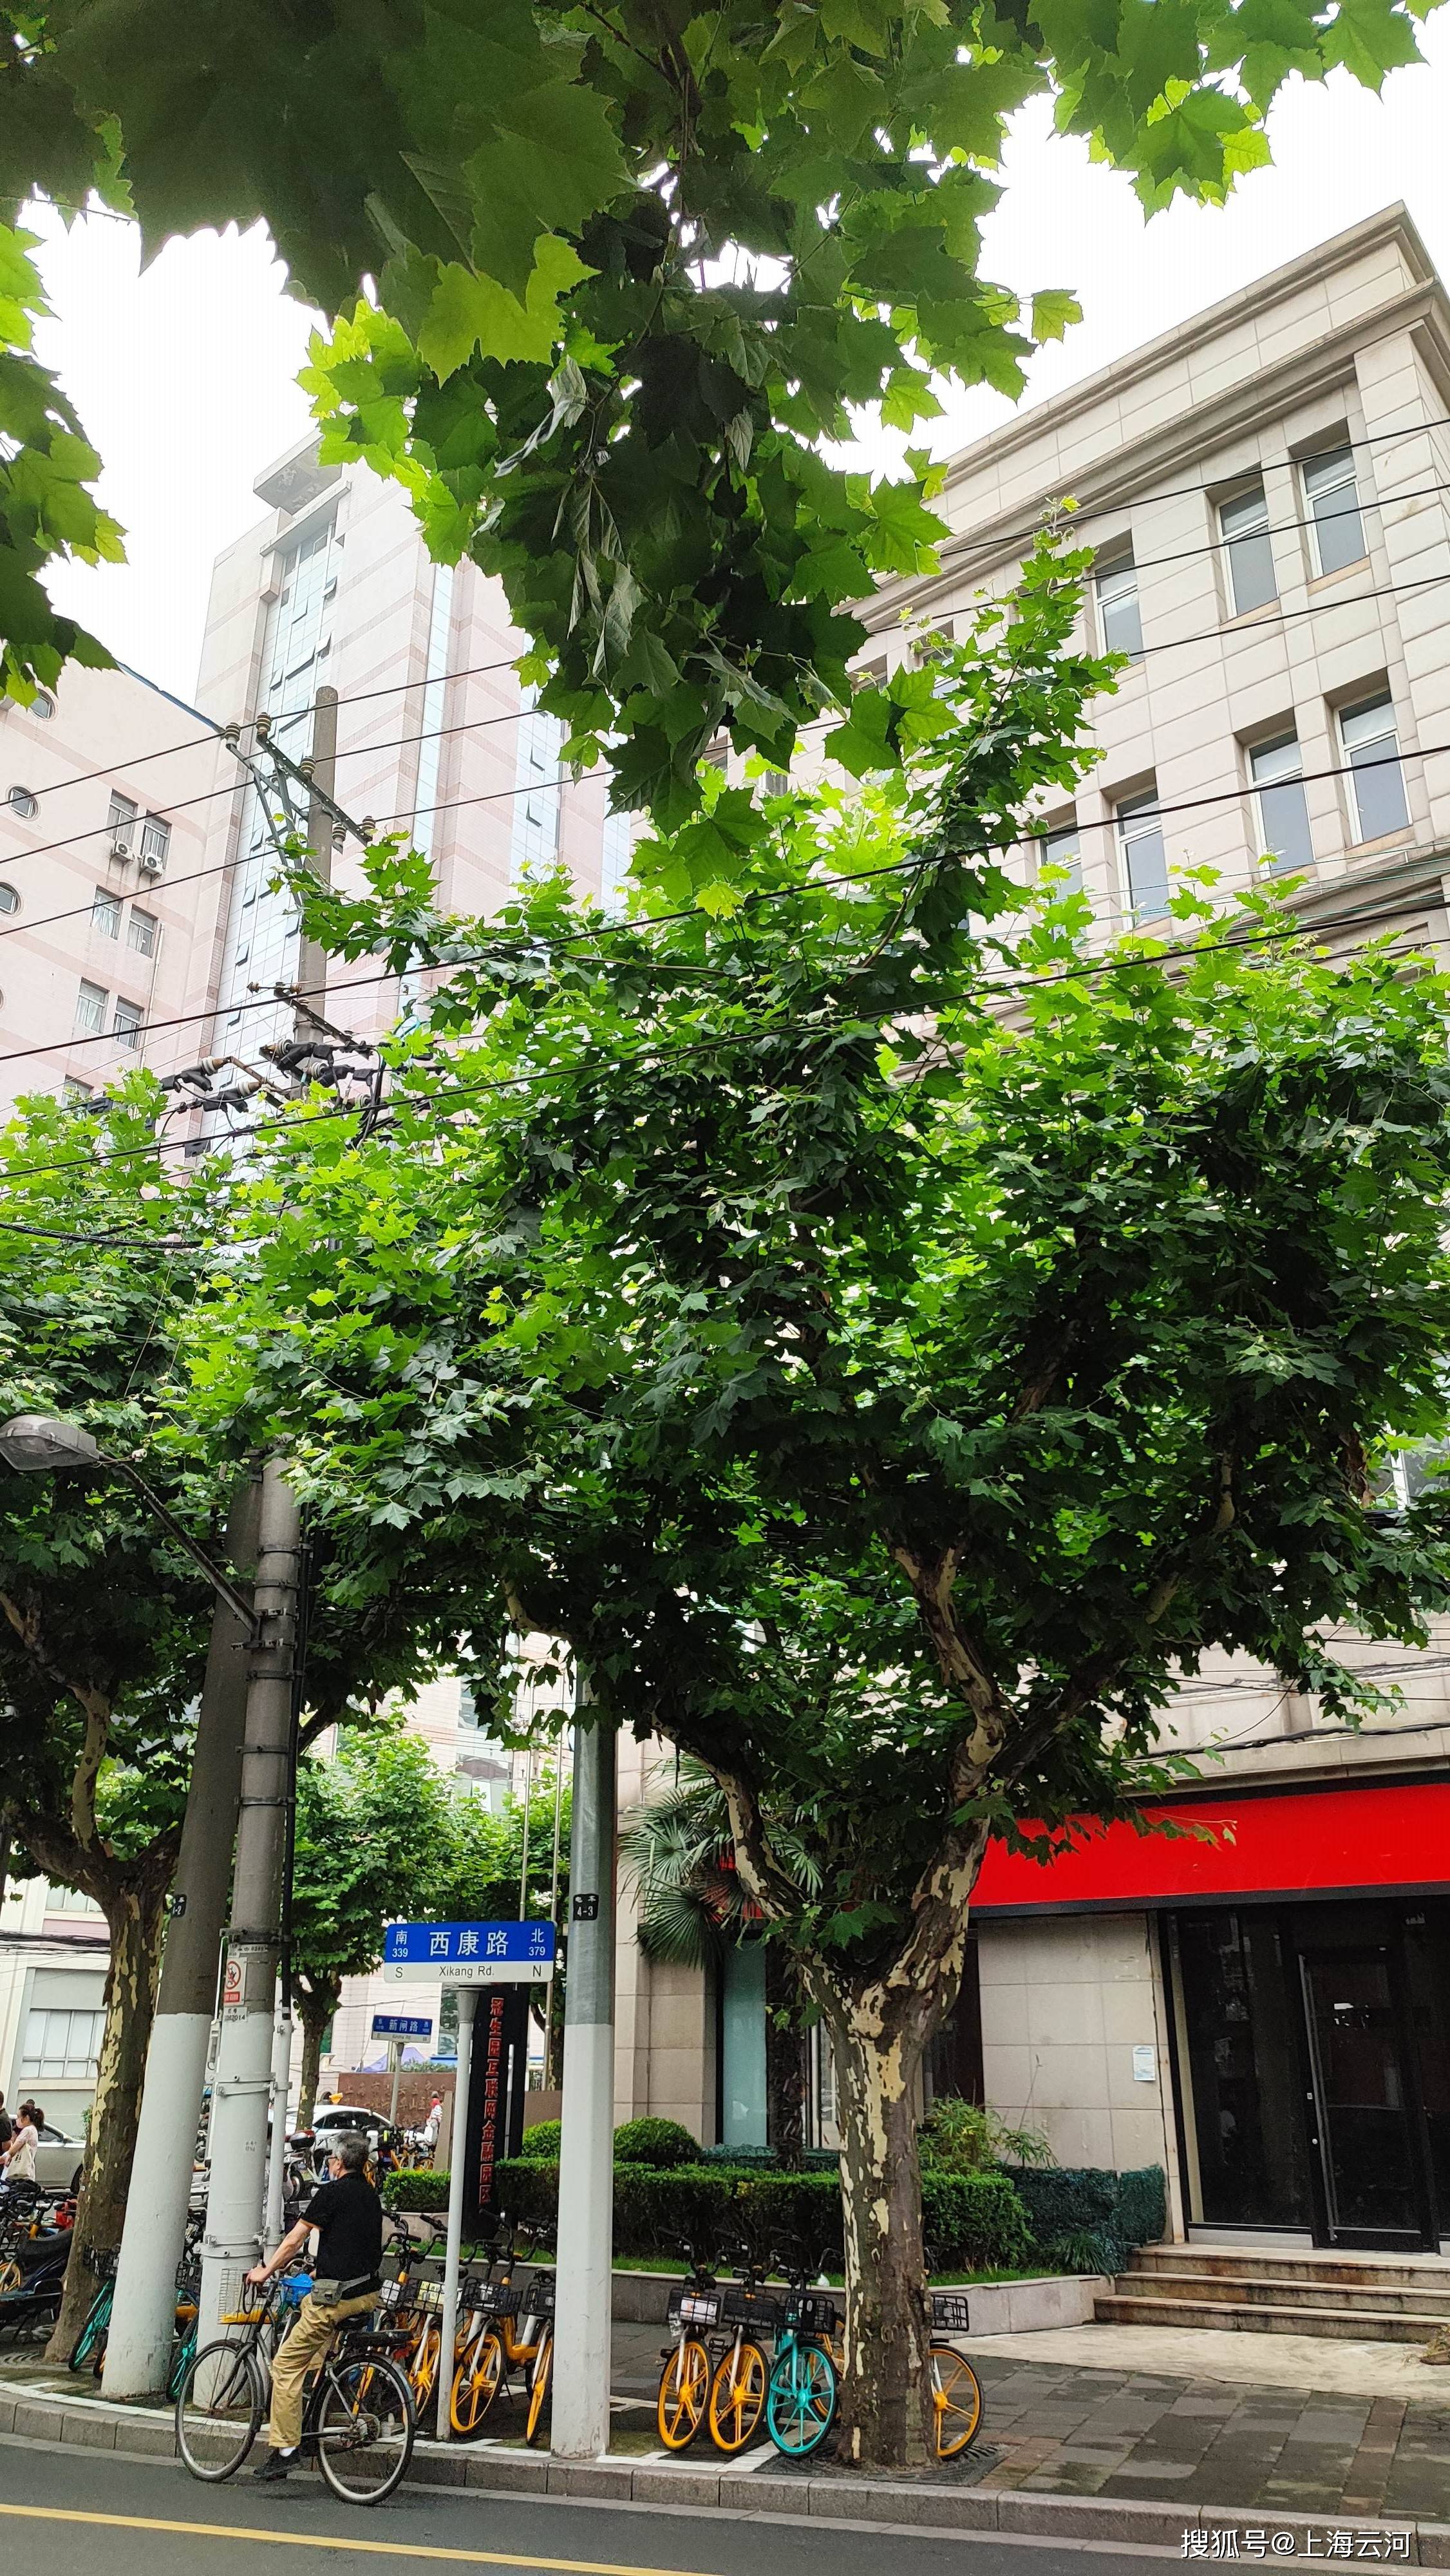 上海梧桐树街道图片